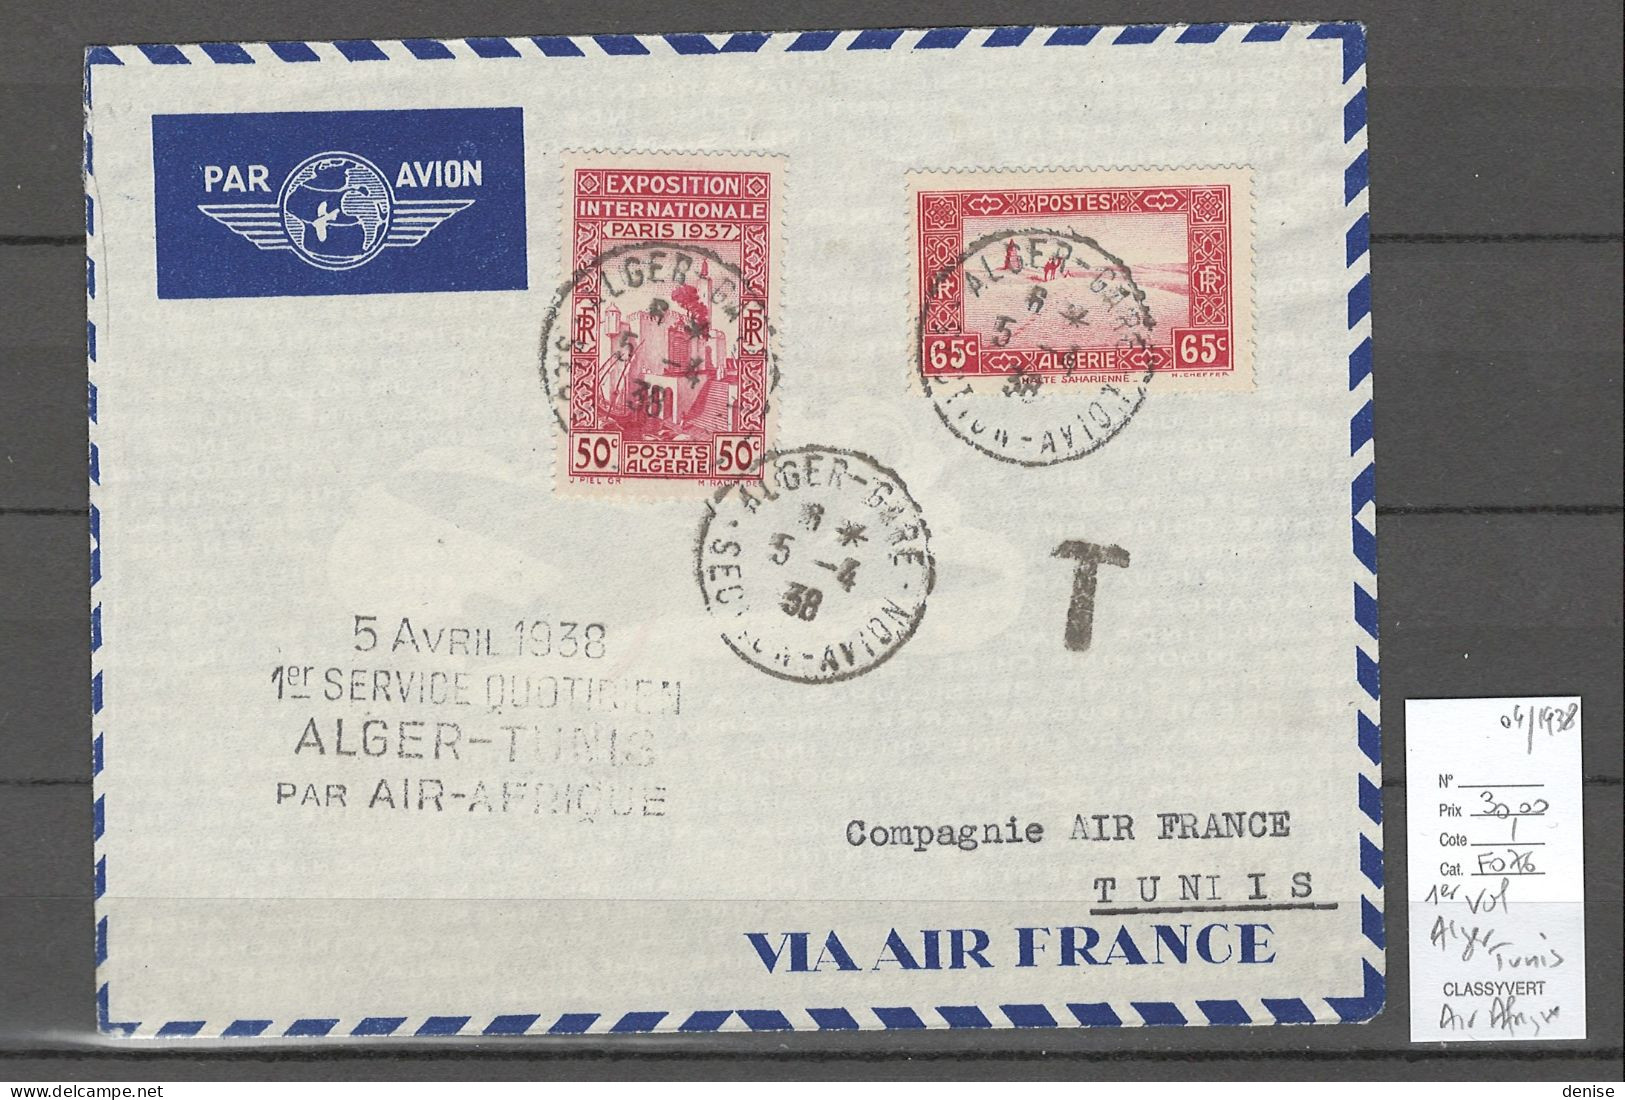 Algerie - 1er Vol Alger - Tunis - Air Afrique - 1938 - Airmail